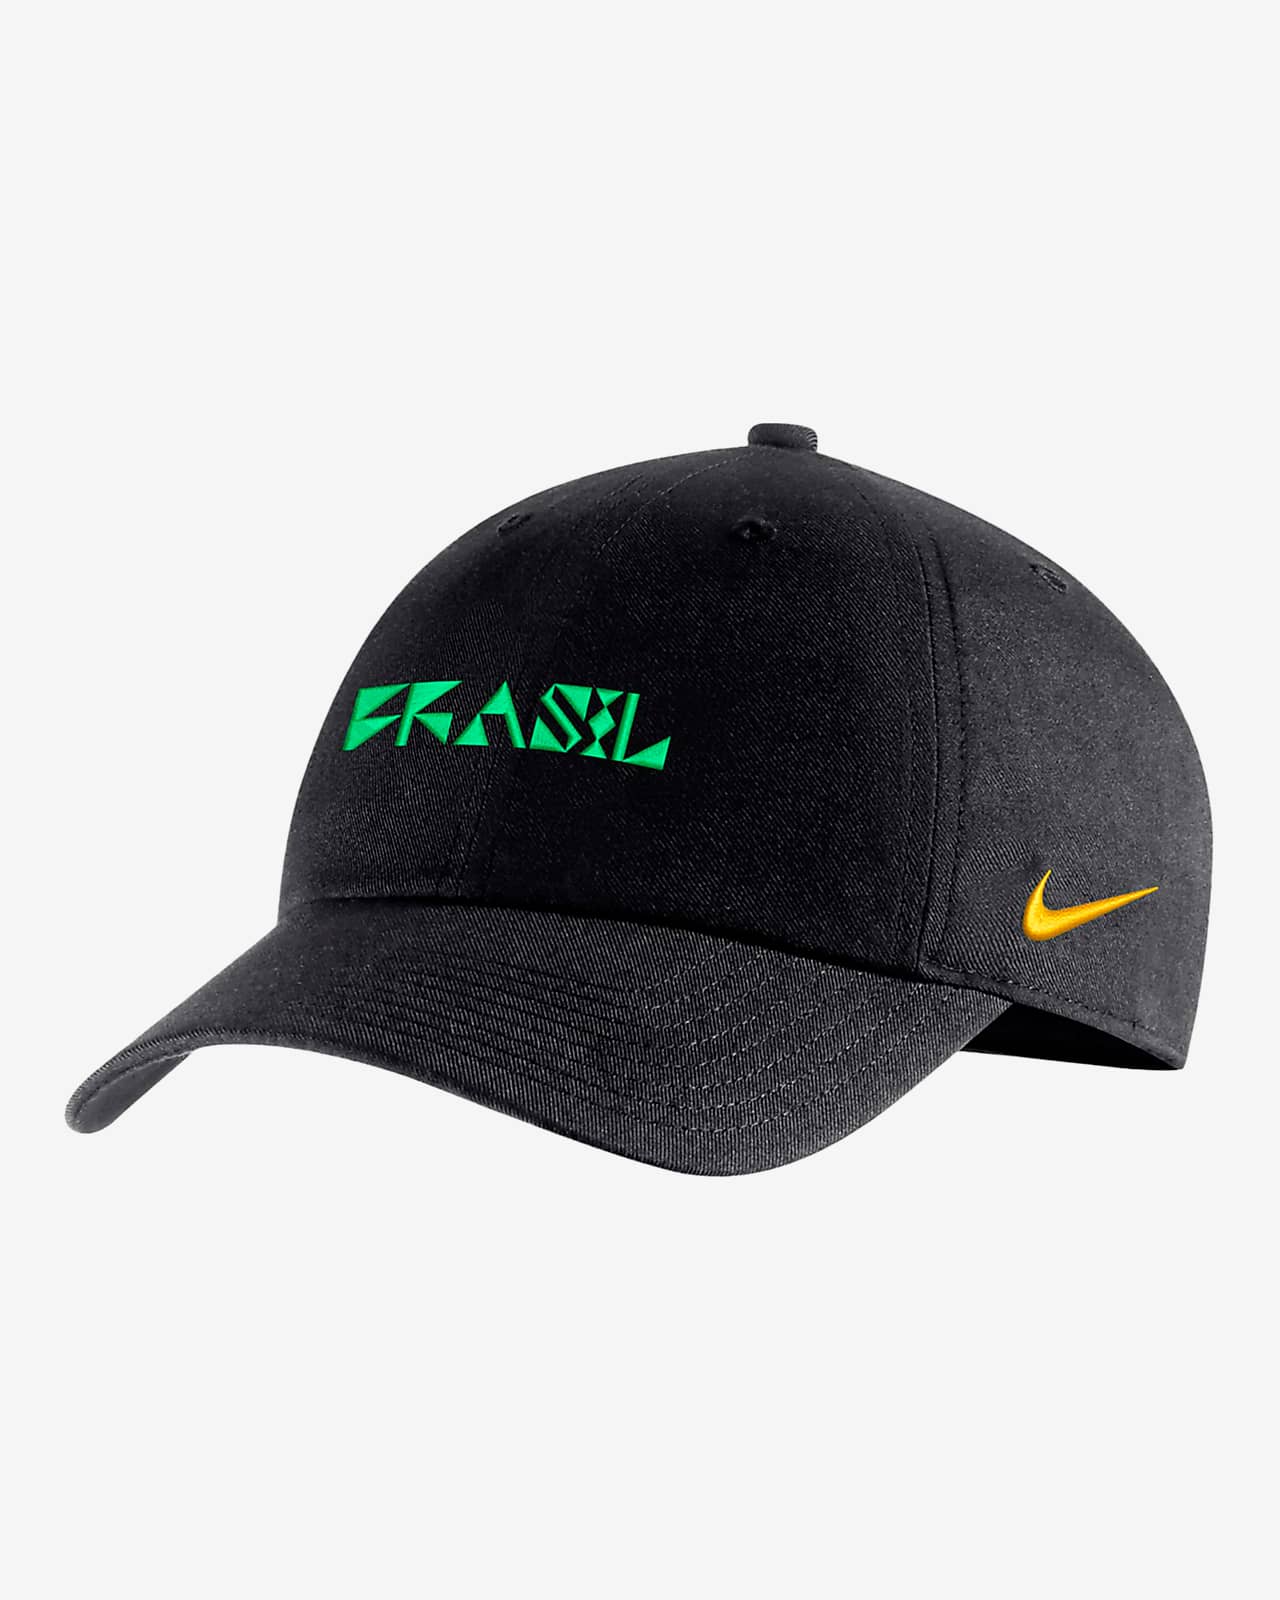 Brazil National Team Campus Men's Nike Soccer Adjustable Hat